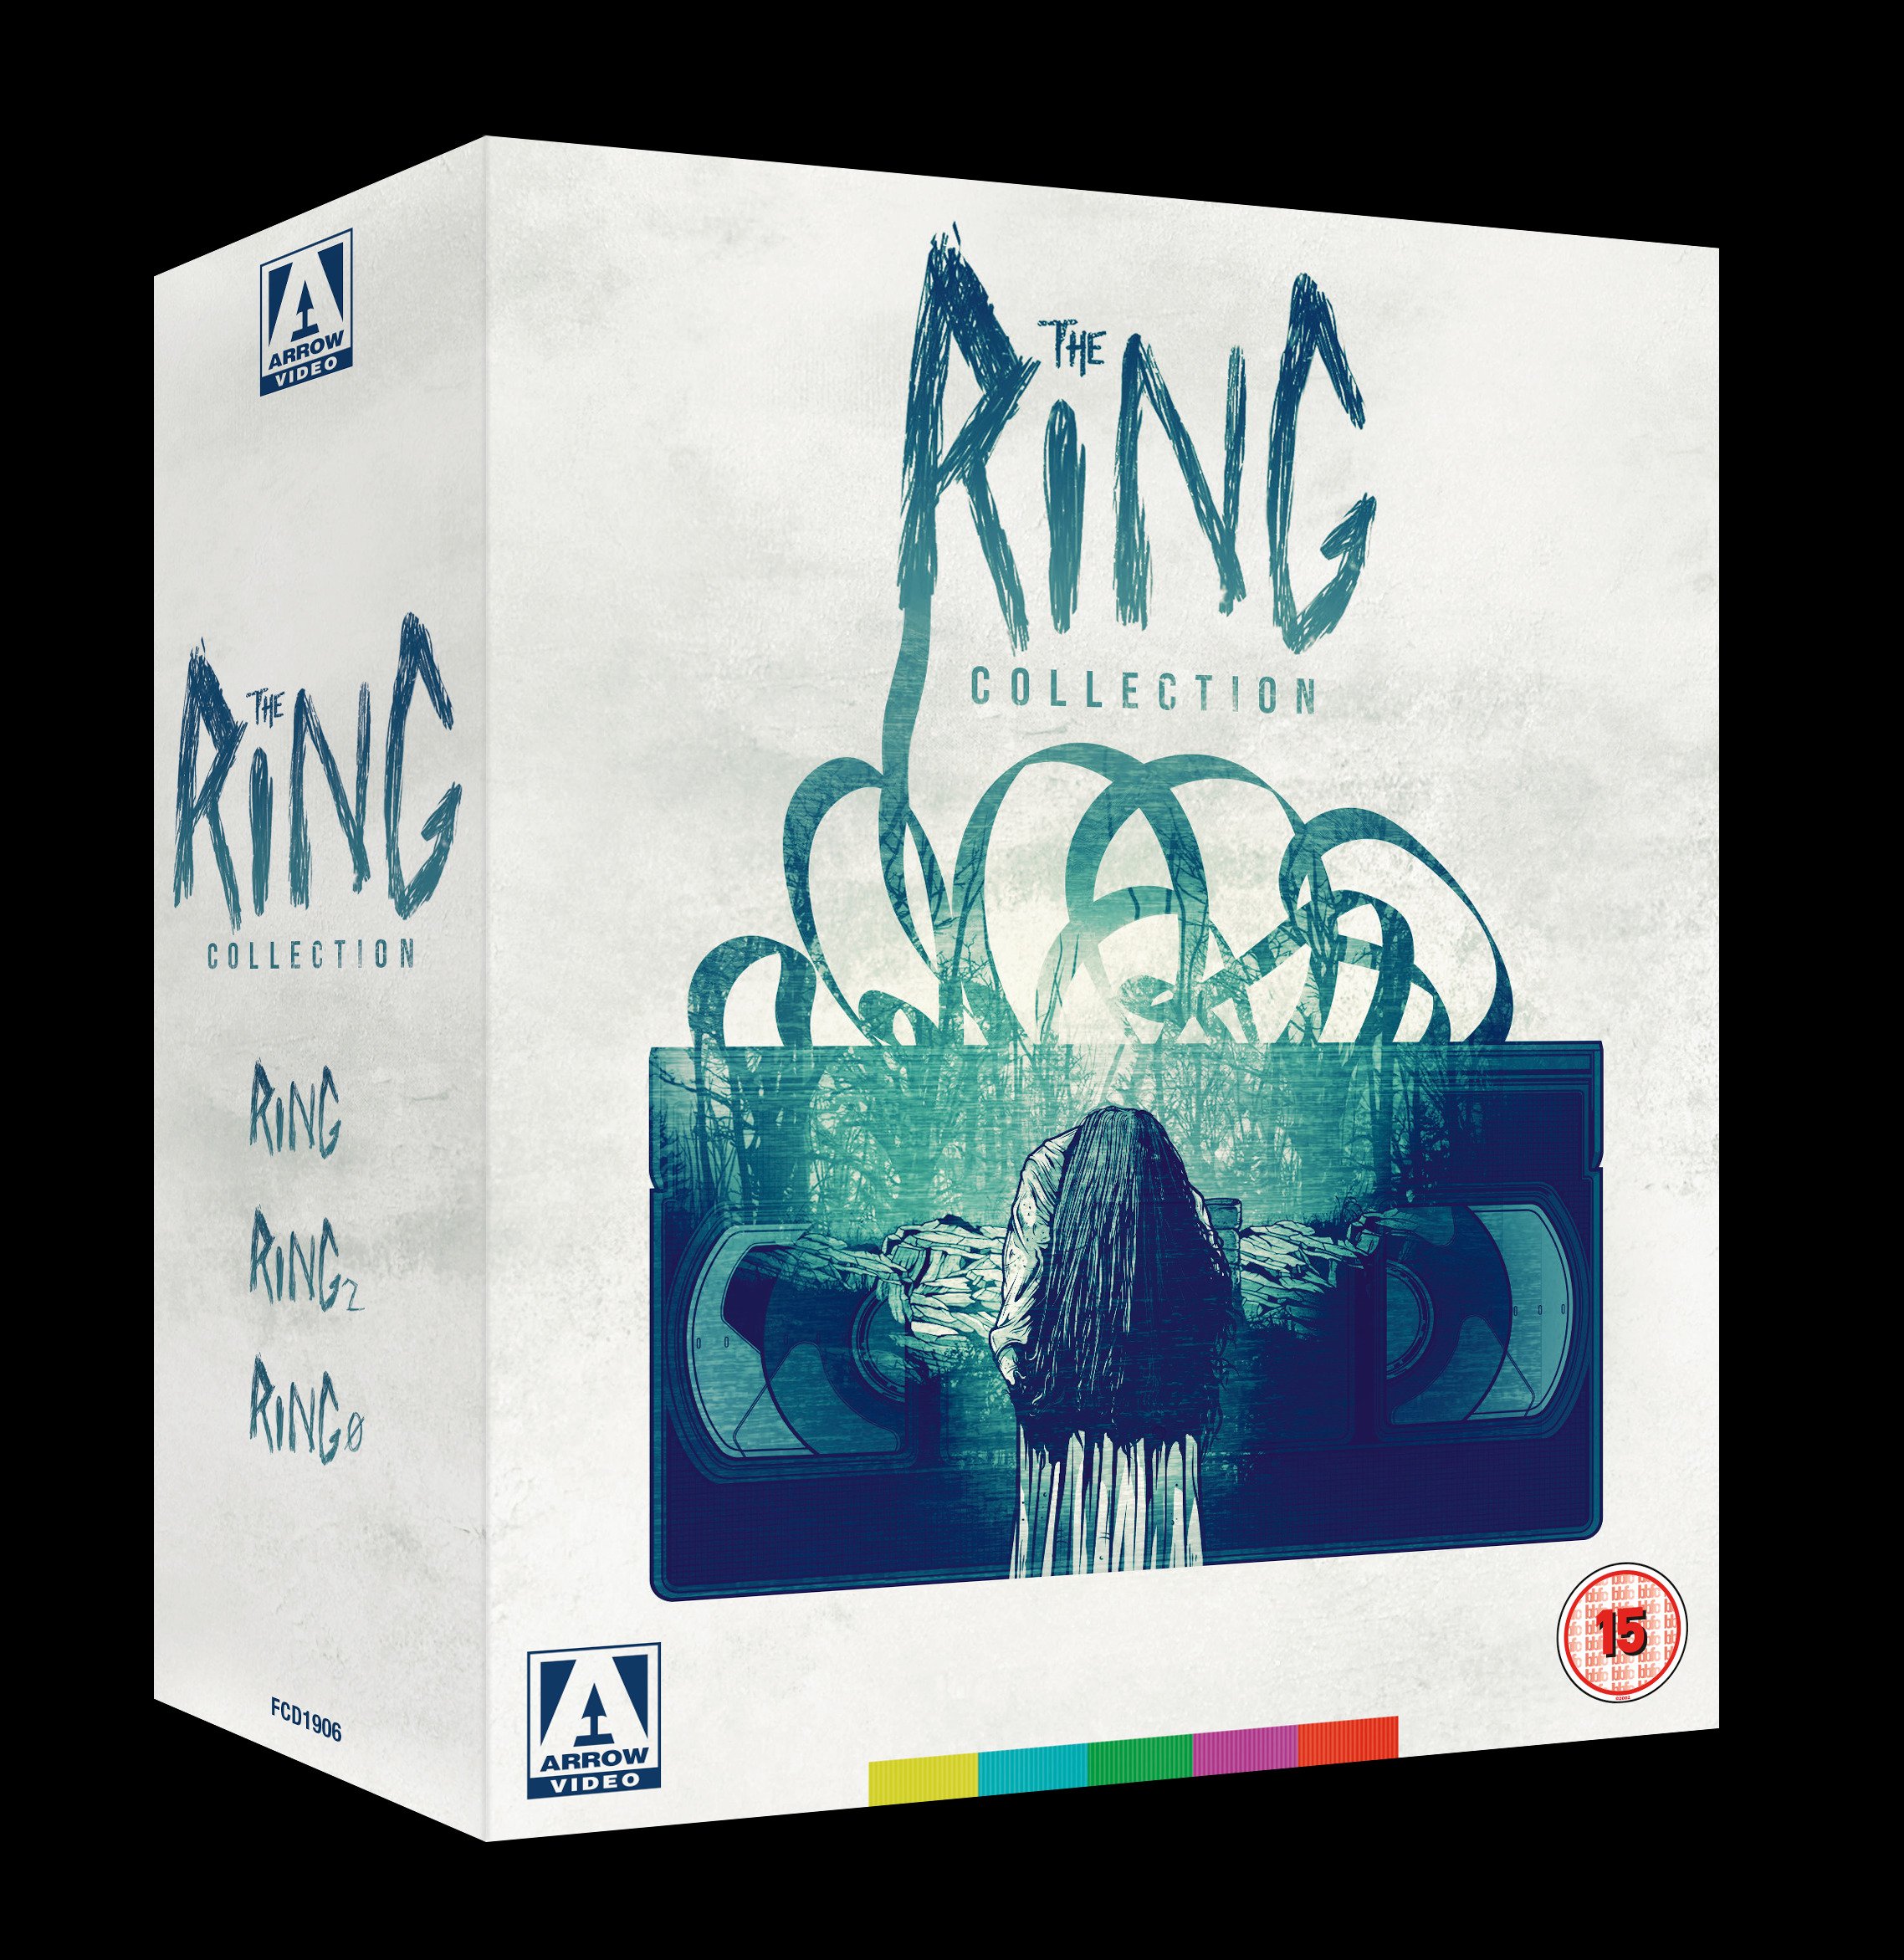 Natuur Dagelijks kruipen ArrowFilmsVideo on Twitter: "BACK IN STOCK UK TITLE: The Ring Collection ( Blu-ray): https://t.co/jDQSRXLqUB https://t.co/ZuevJunHvJ" / Twitter